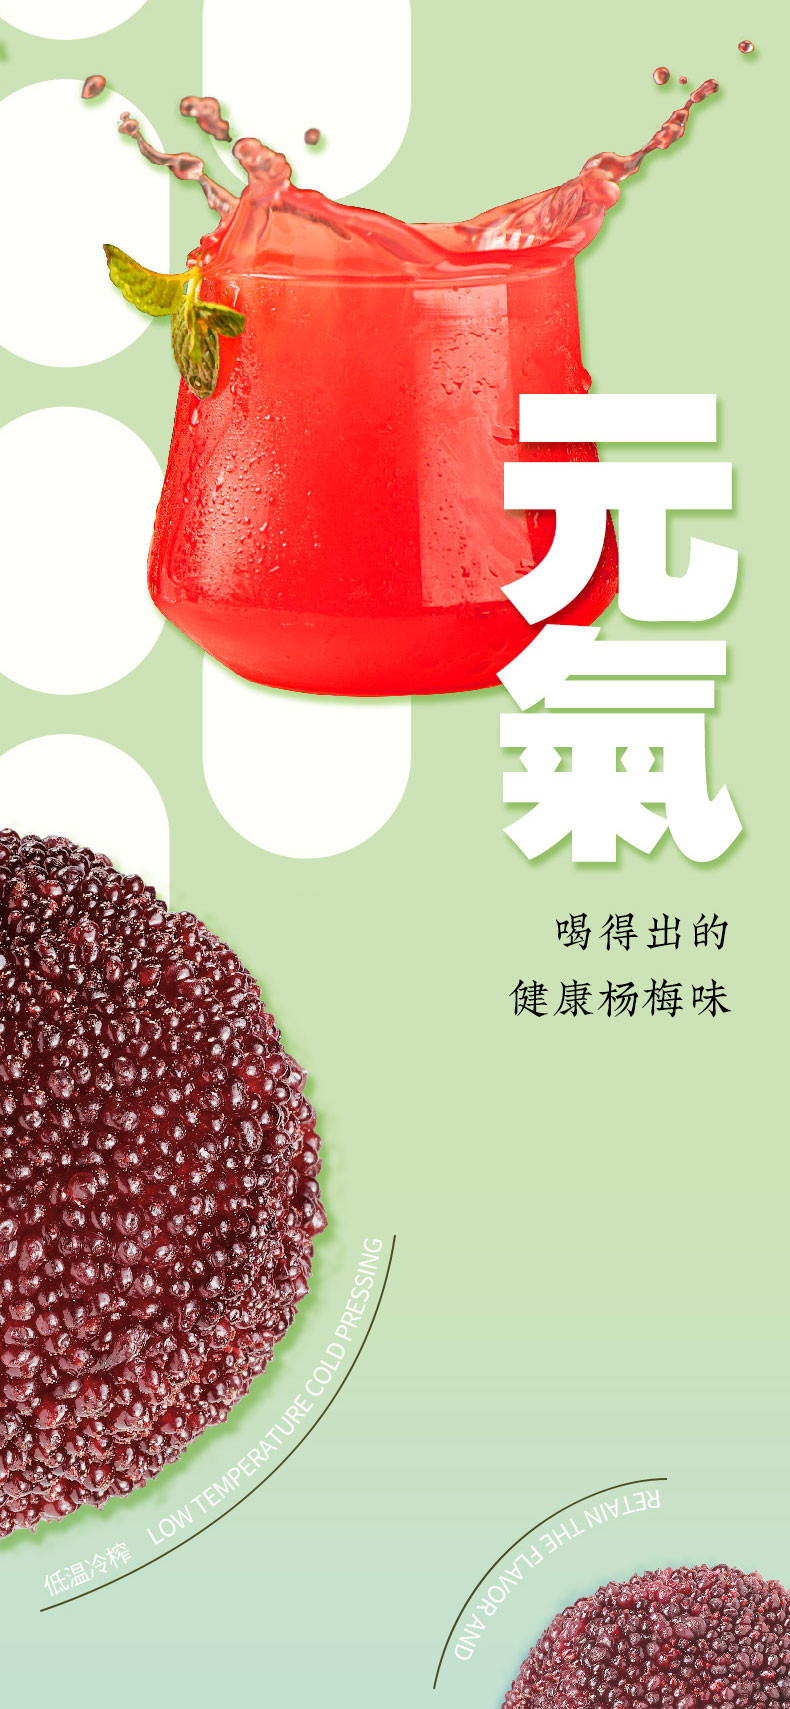 陶奉源 【绿色食品】 杨梅汁 配料干净 无添加 酸甜可口